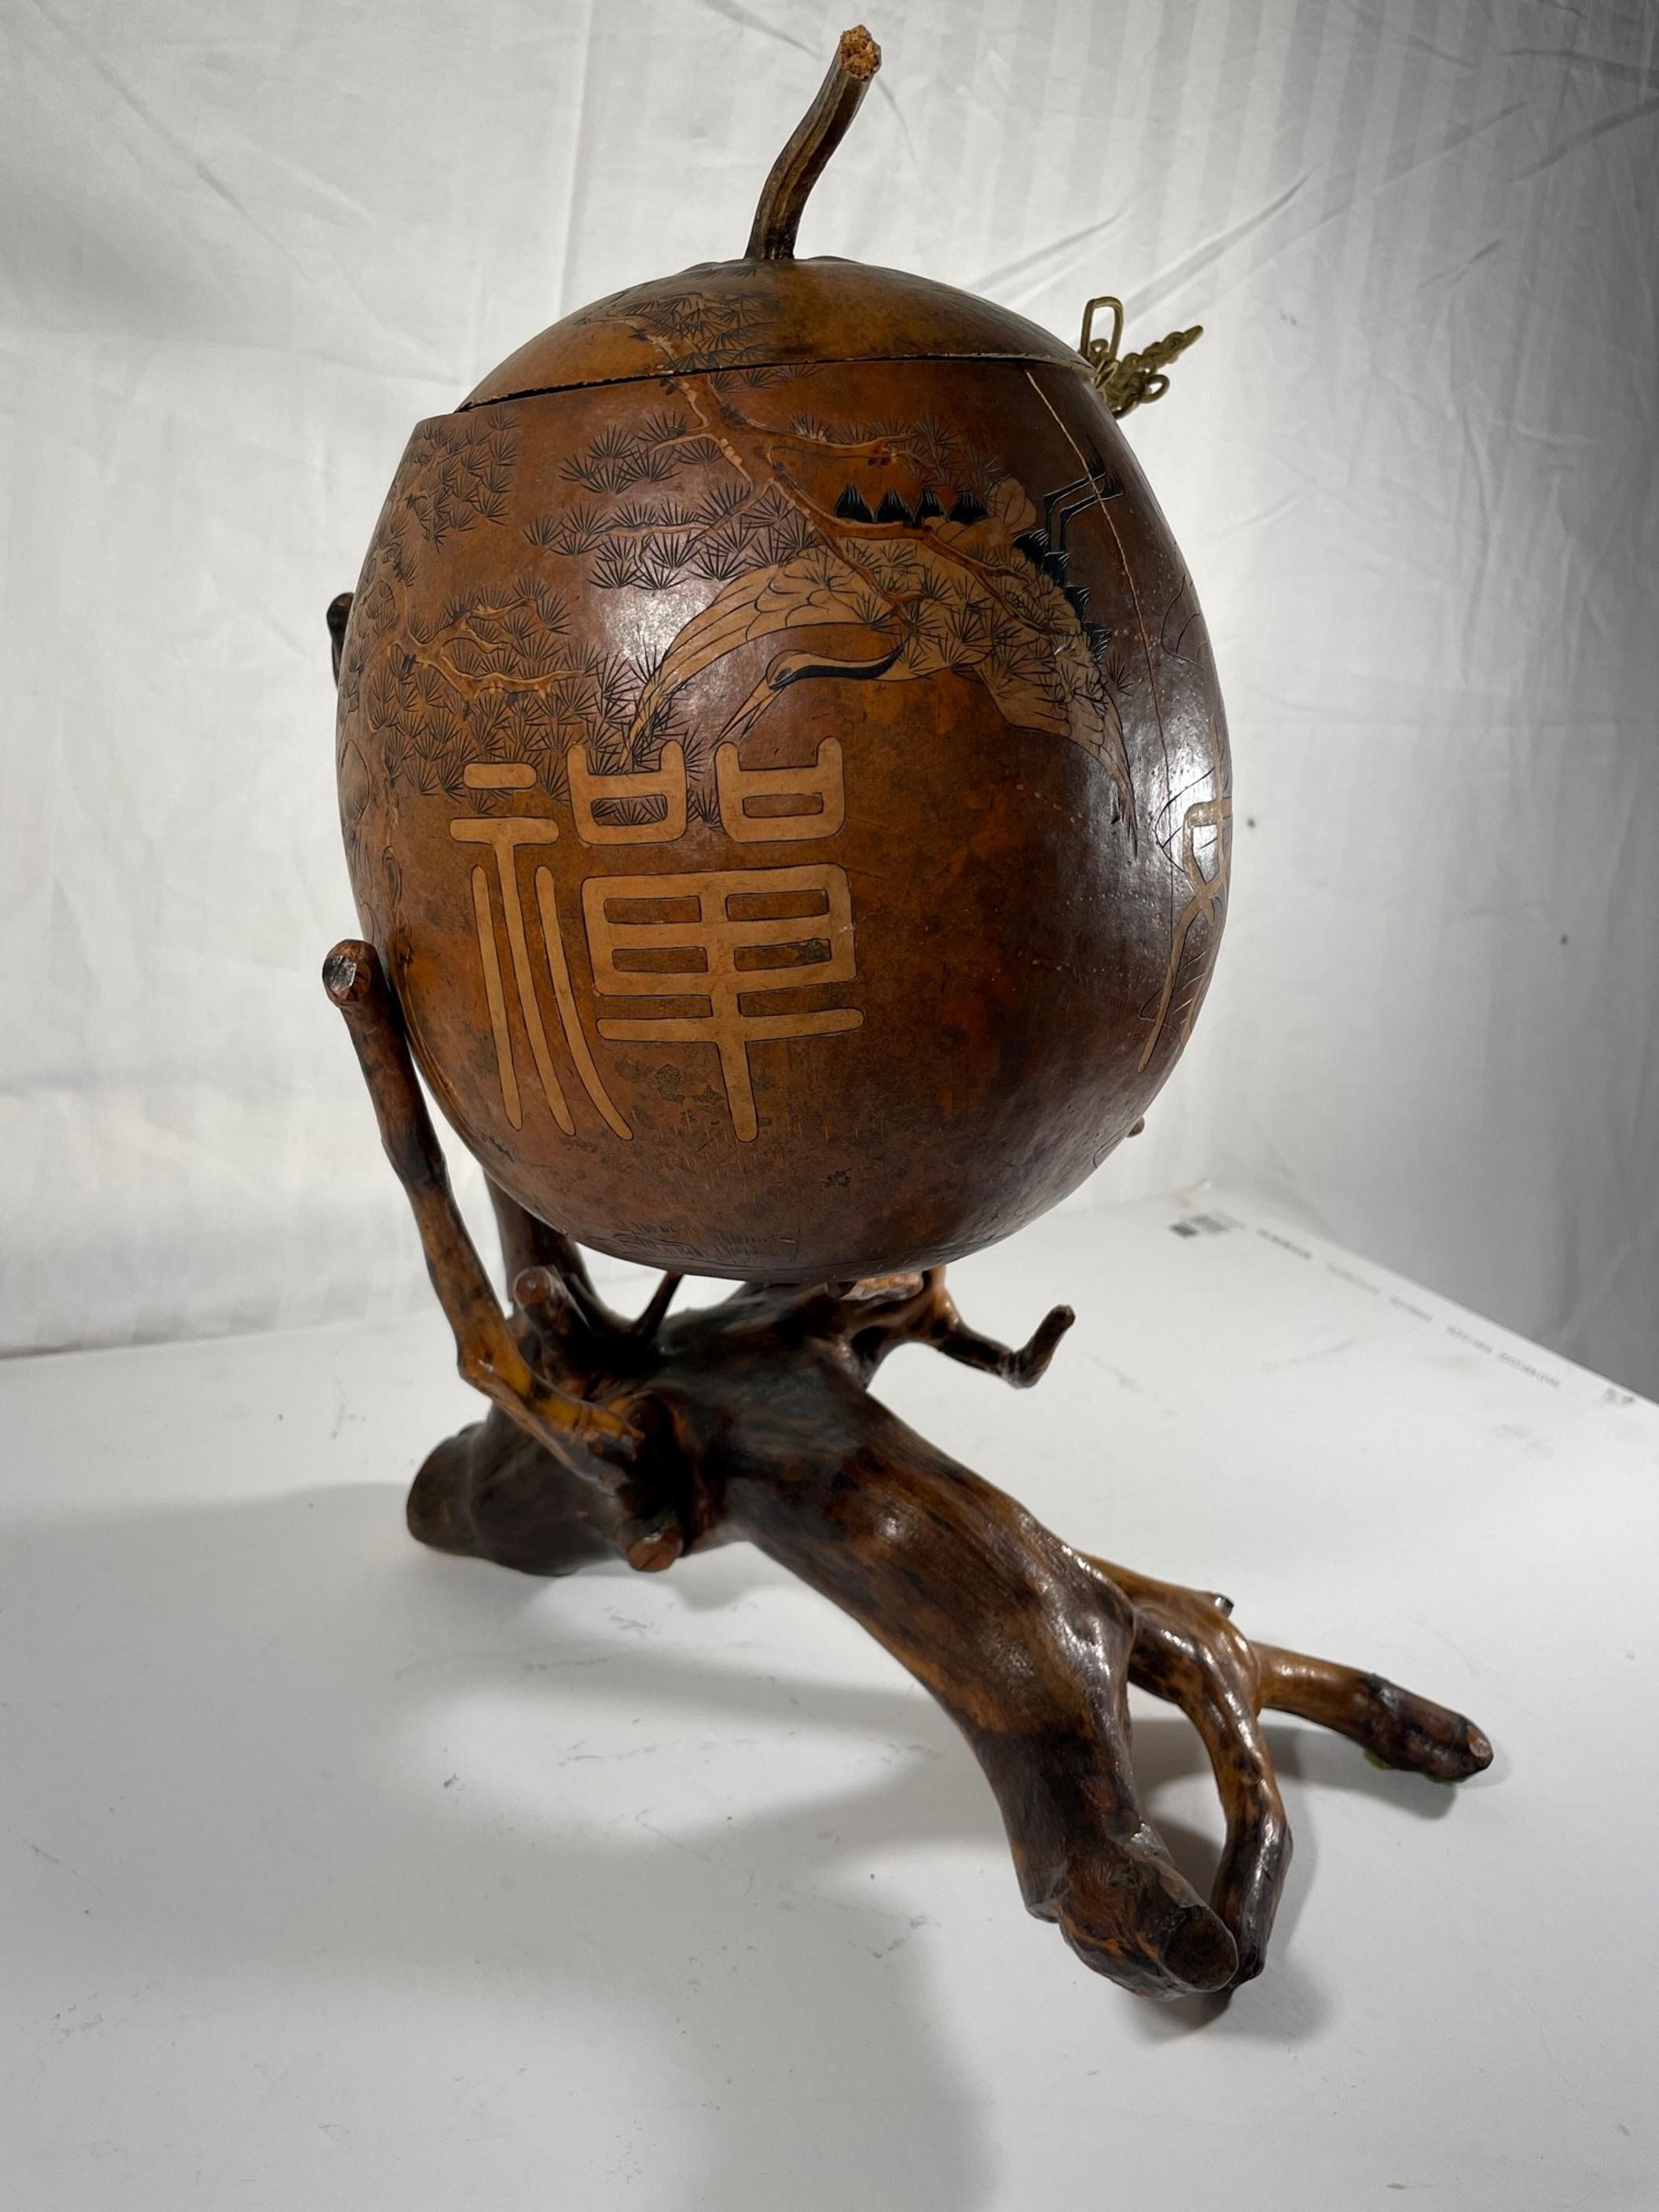 Sculpture chinoise de calebasse de Lanzhou avec cordon en macramé sur pied de racine.

Grande gourde chinoise de Lanzhou gravée et sculptée du début du 20e siècle. Motif dramatique de symboles et de lettres, exécuté selon une technique délicate